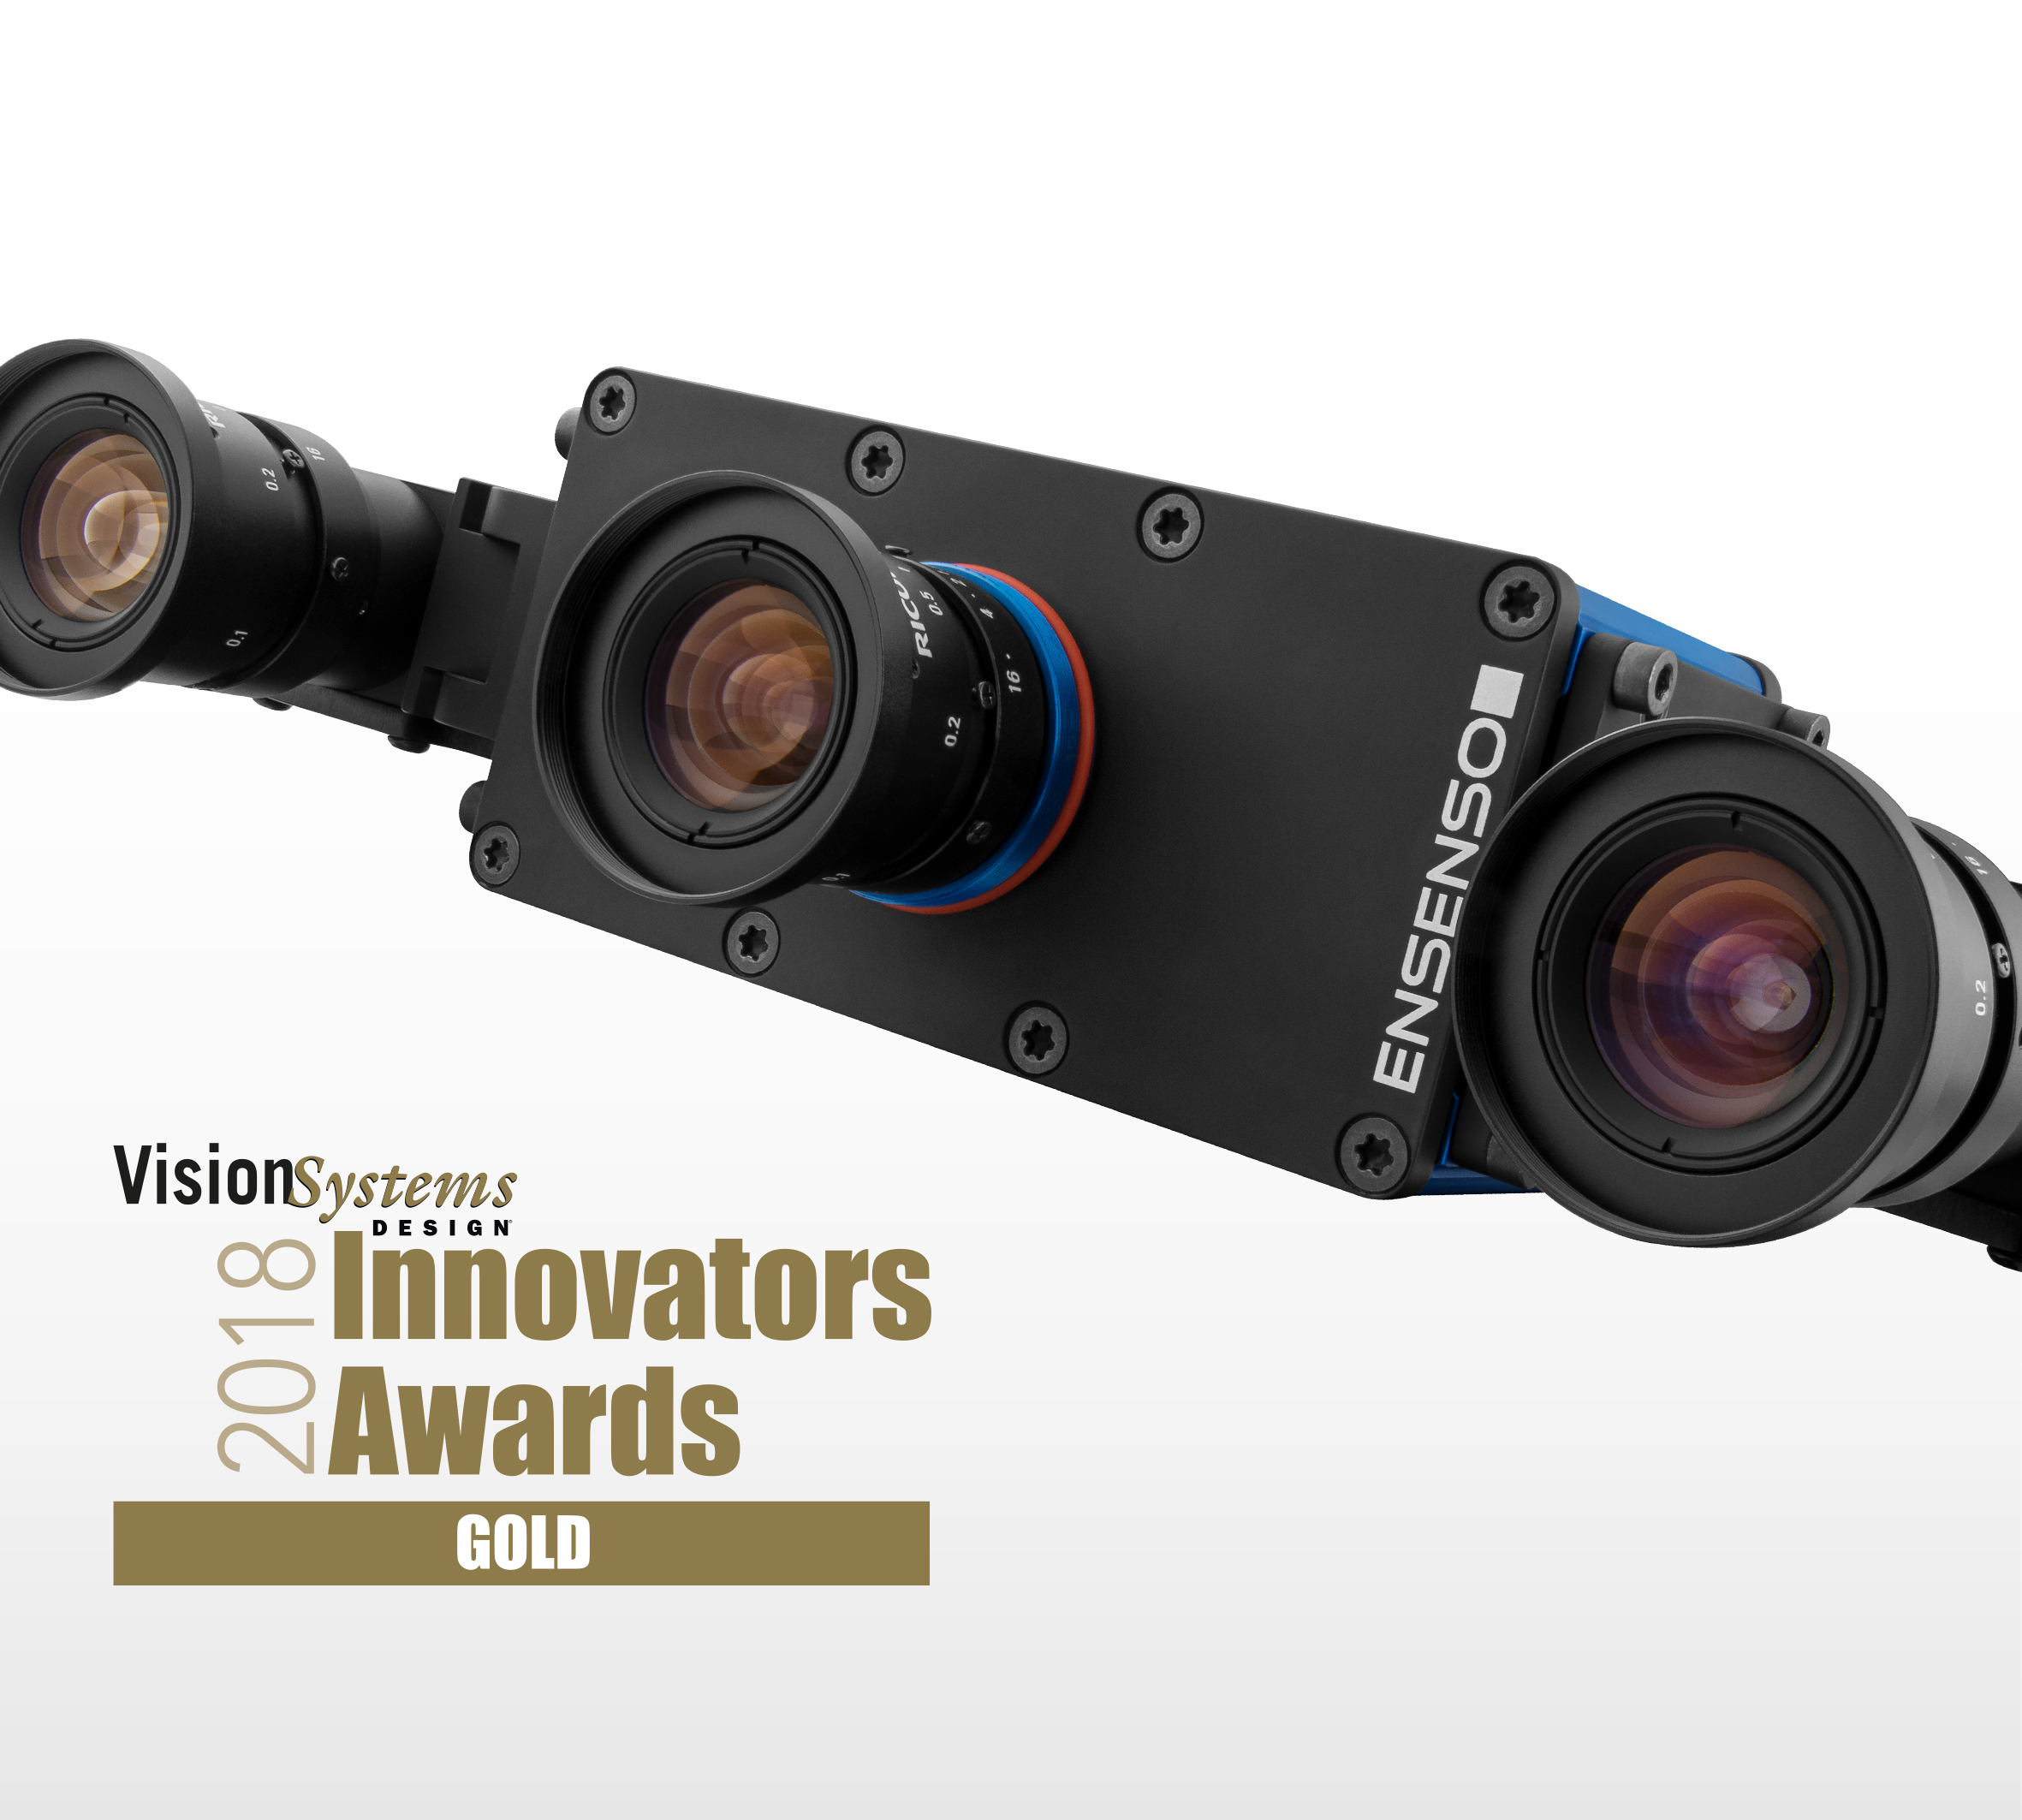 IDS 3D立体视觉相机获得VSD 大奖